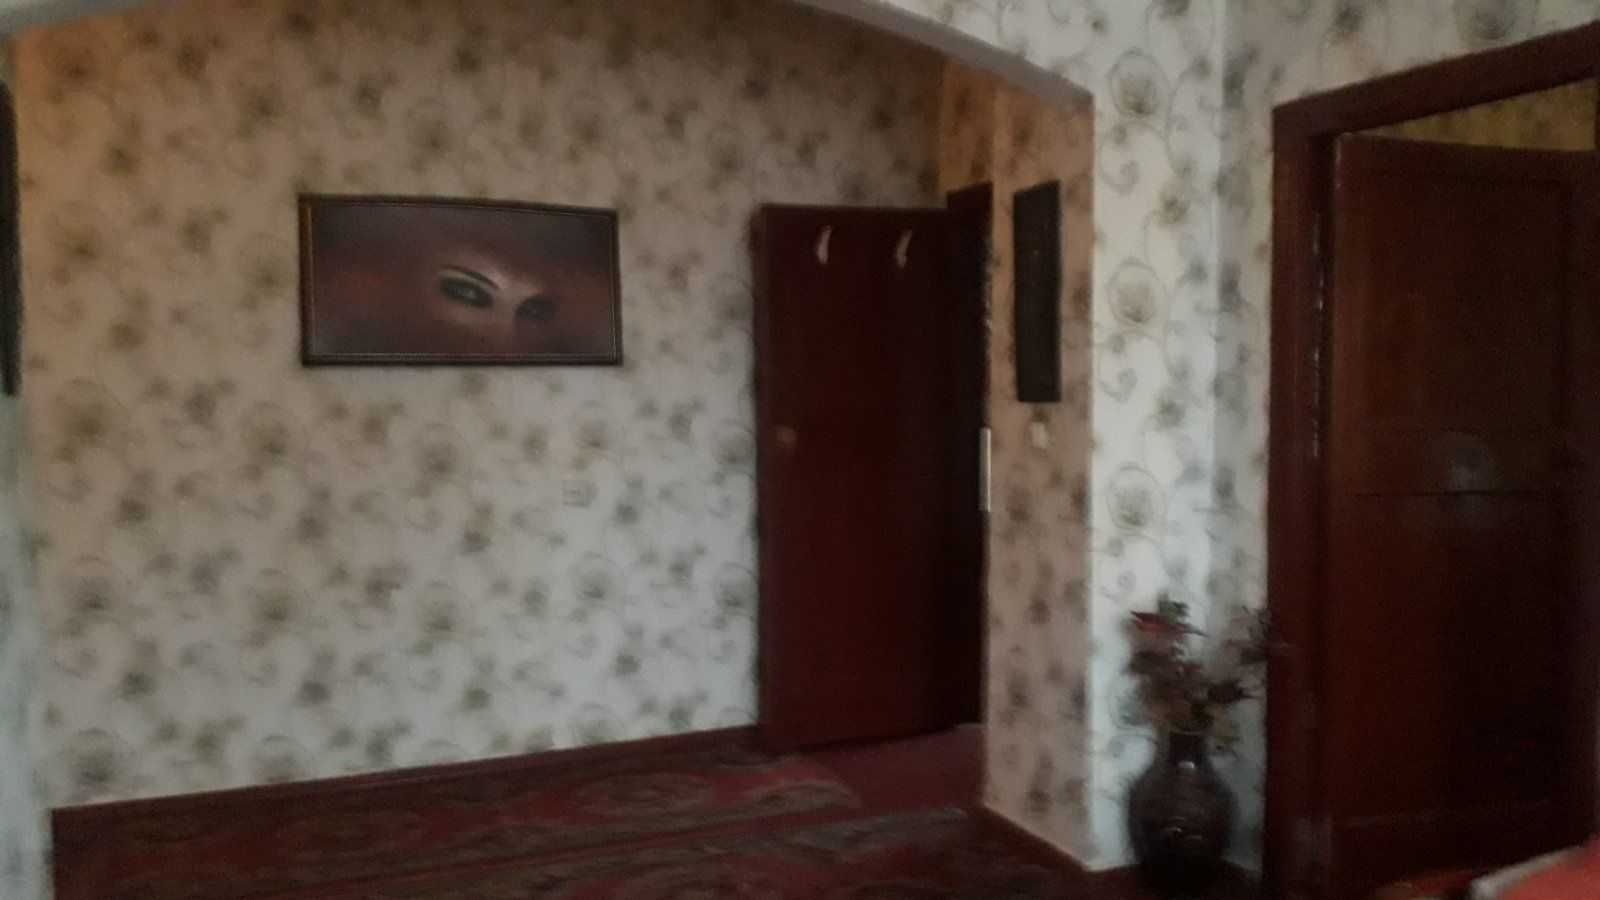 Продажа трех-комнатной квартиры в г.Золотоноша Черкасской области